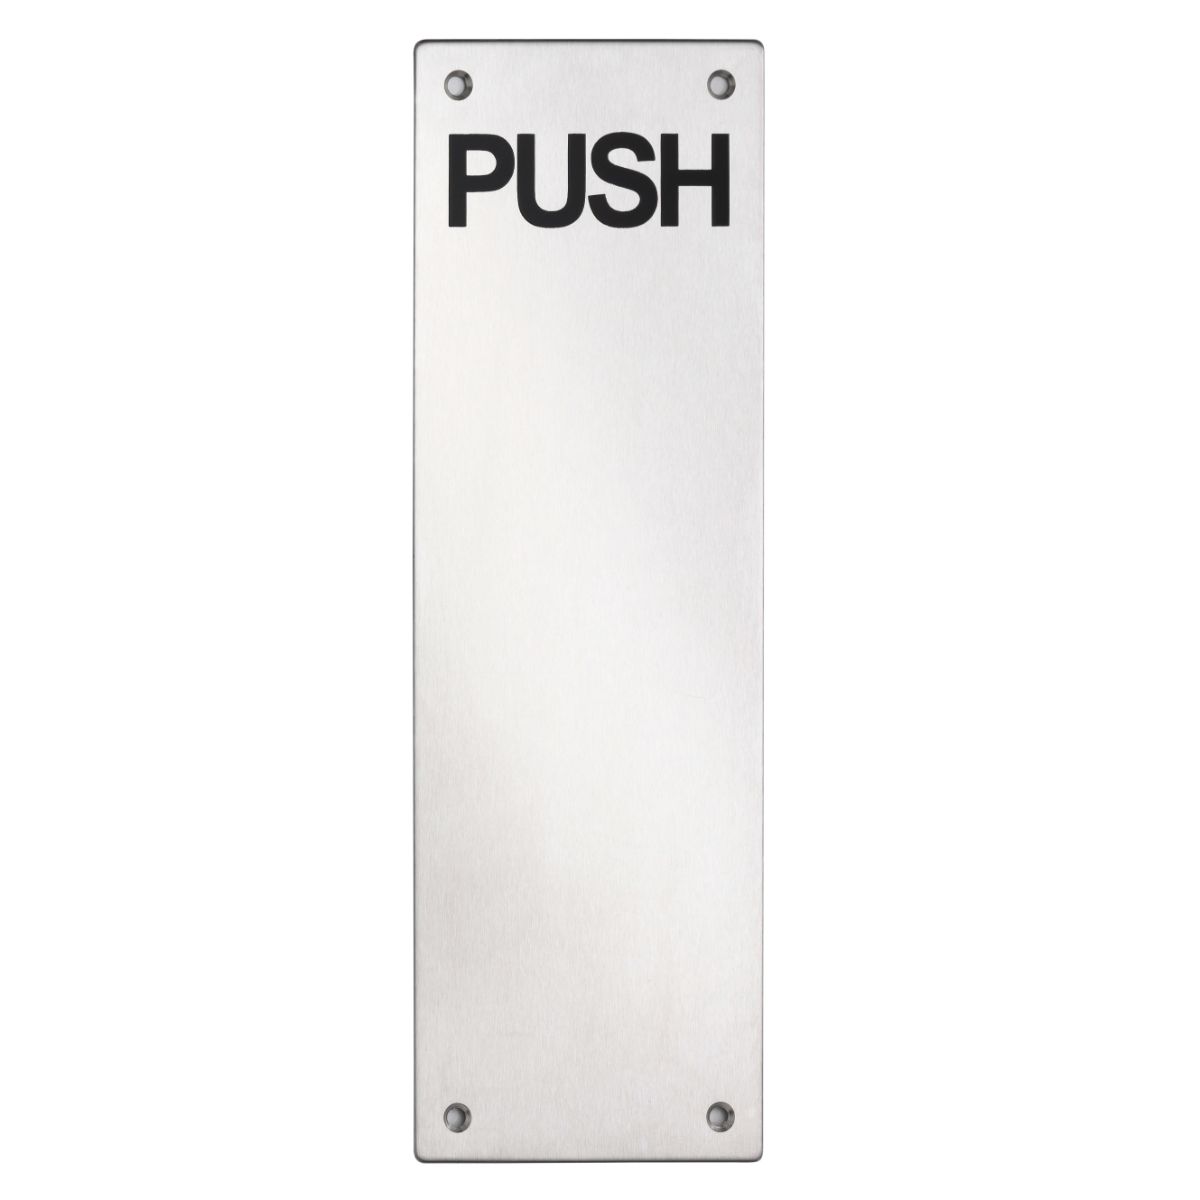 Push Plate v2